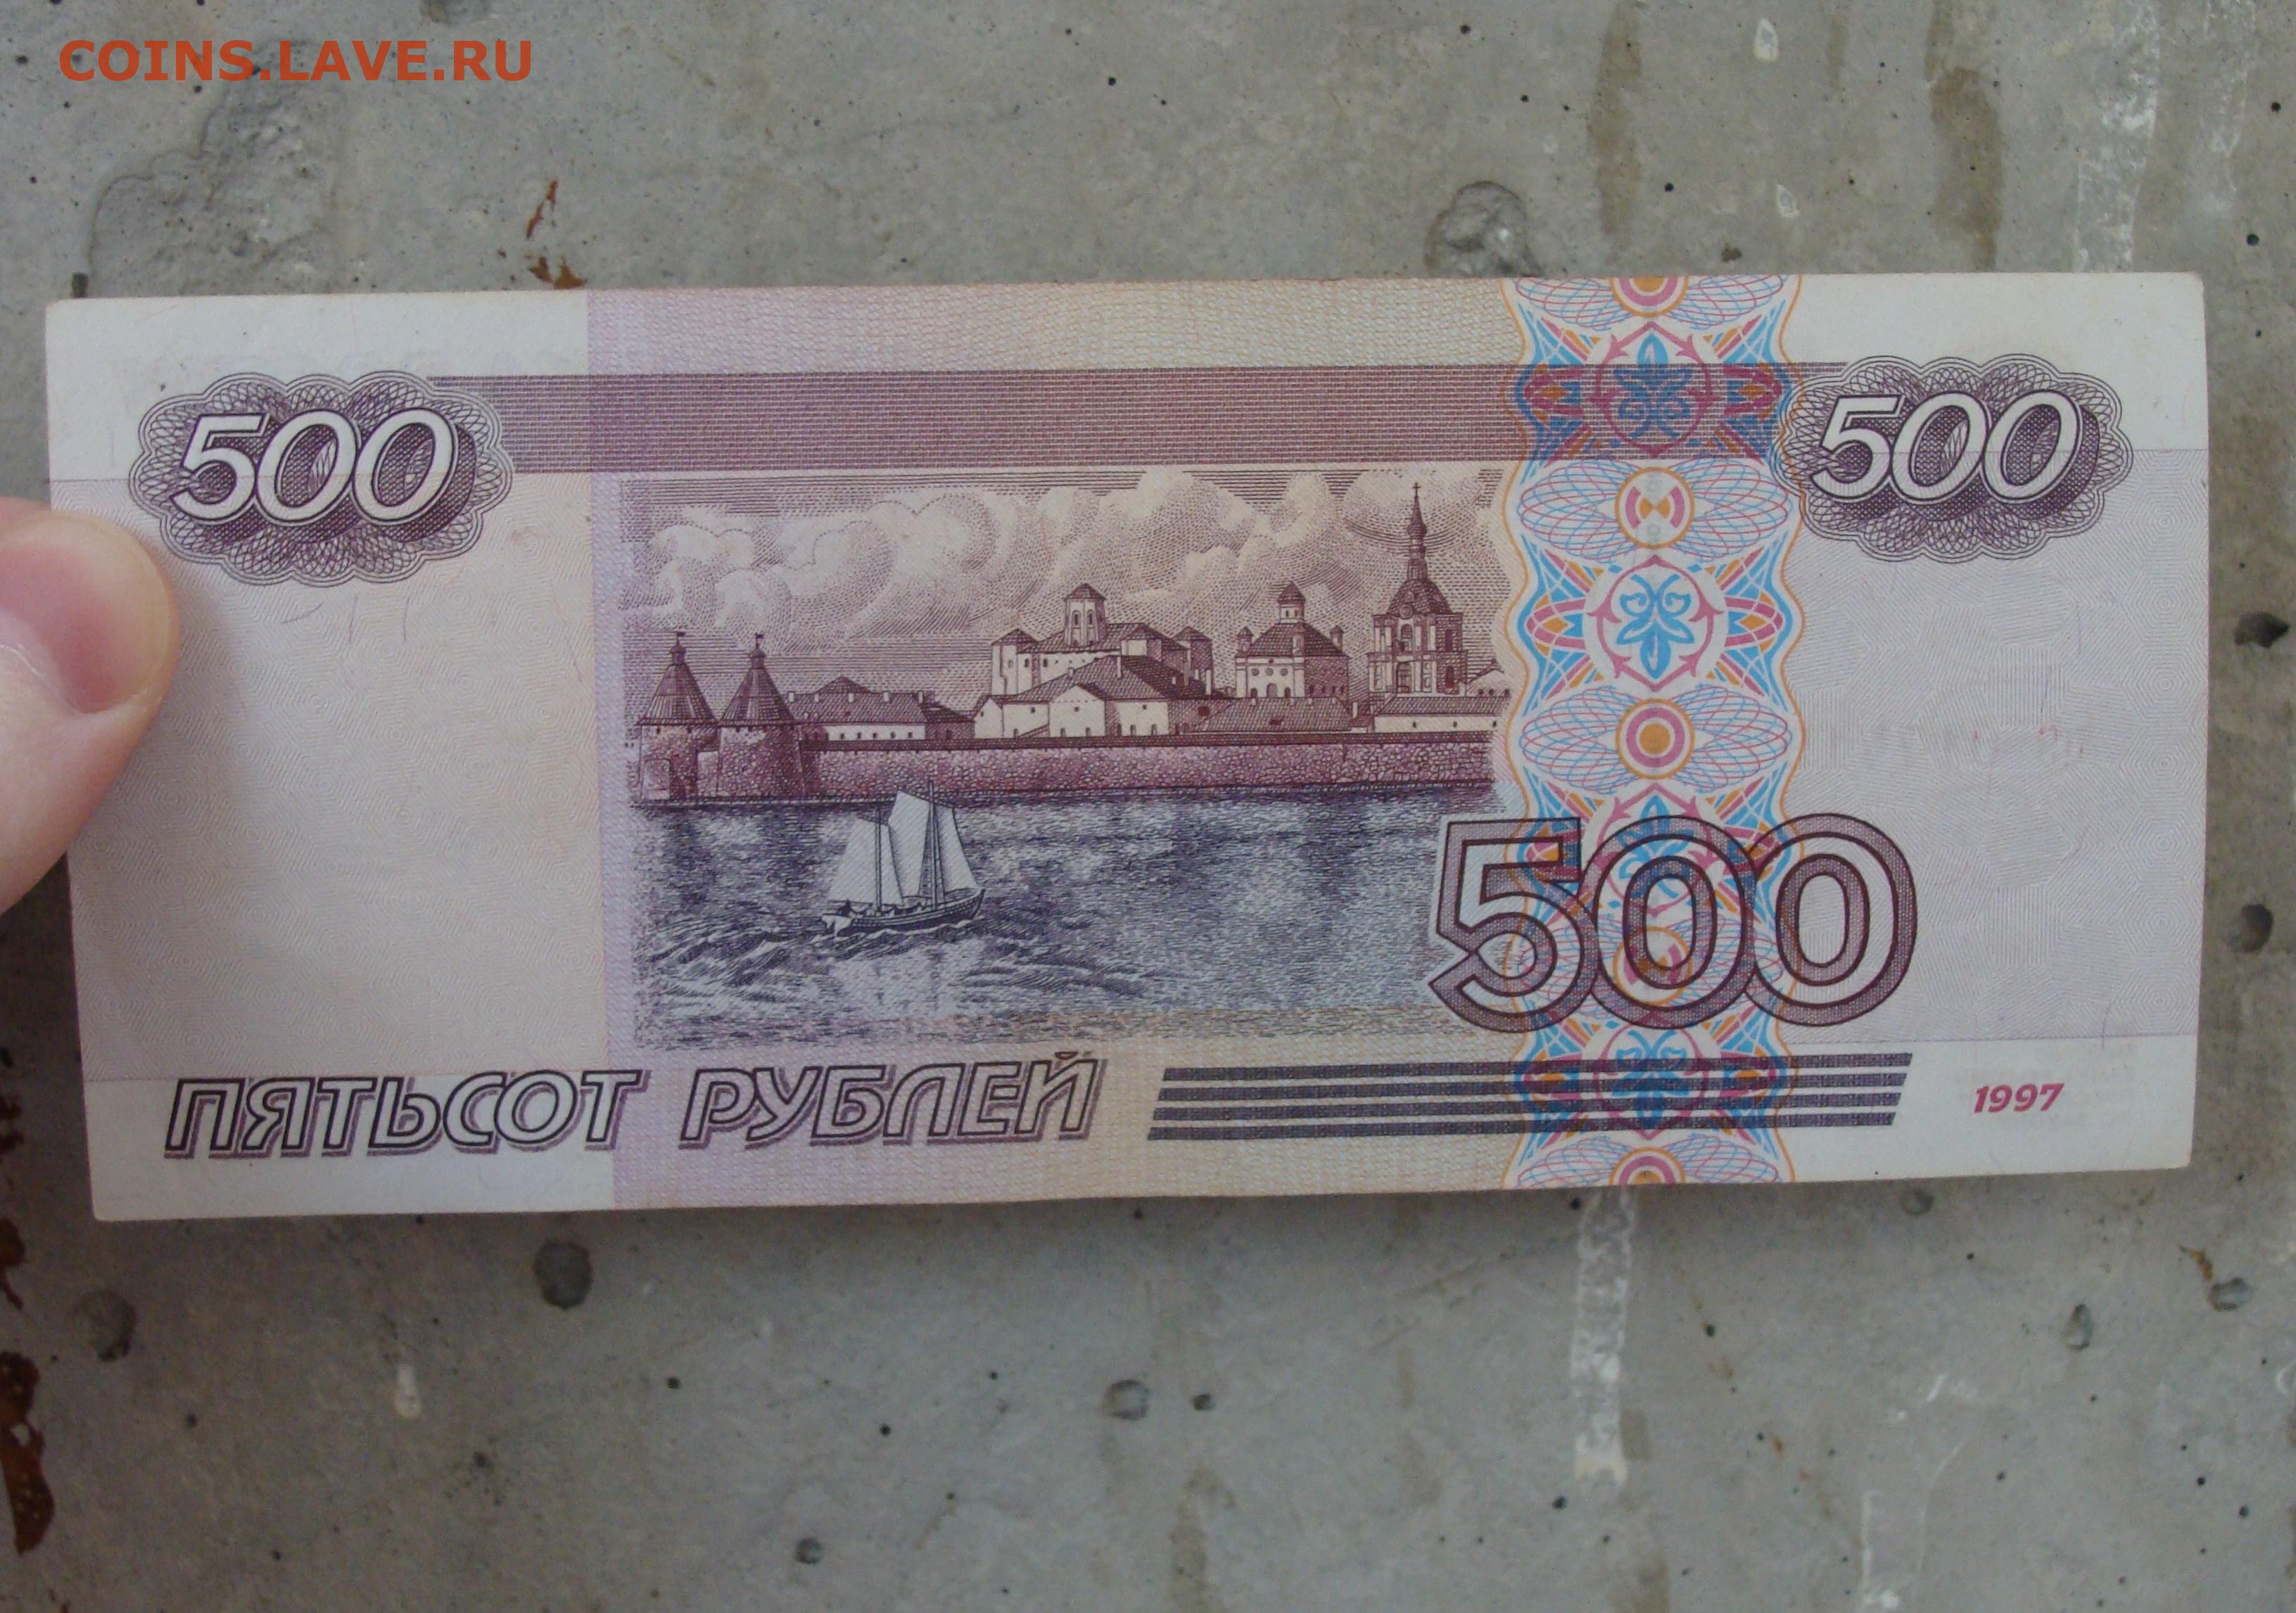 500 российских рублей. 500 Рублей России. 500 Рублей 2001 года модификации. 500 Р модификация 2001.